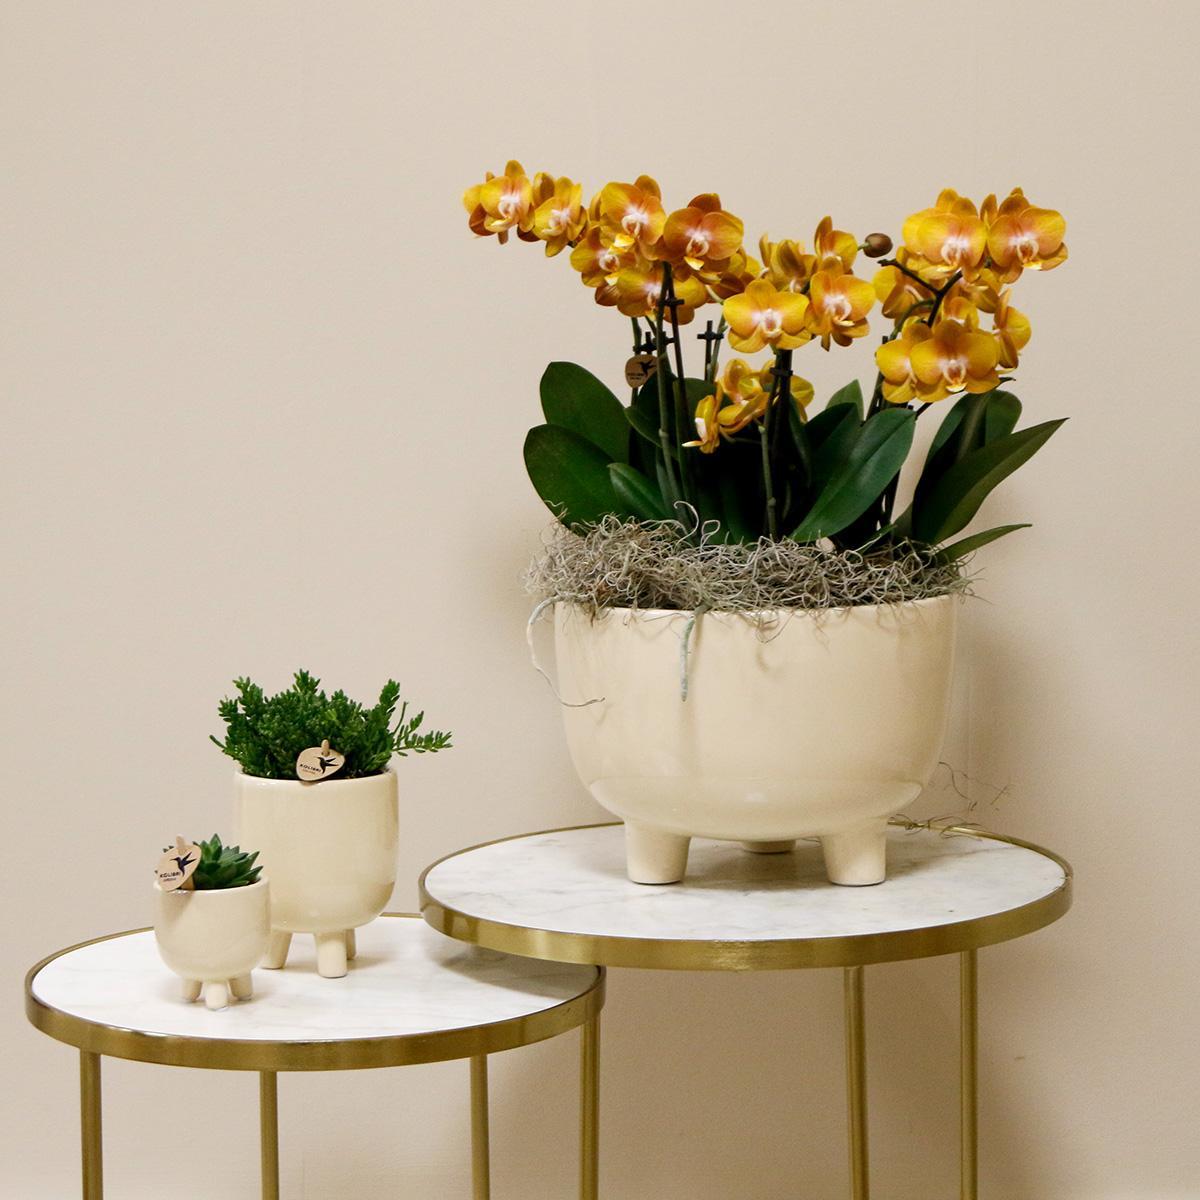 Plante d'orchidée orange dans un bol en caoutchouc avec réservoir d'eau